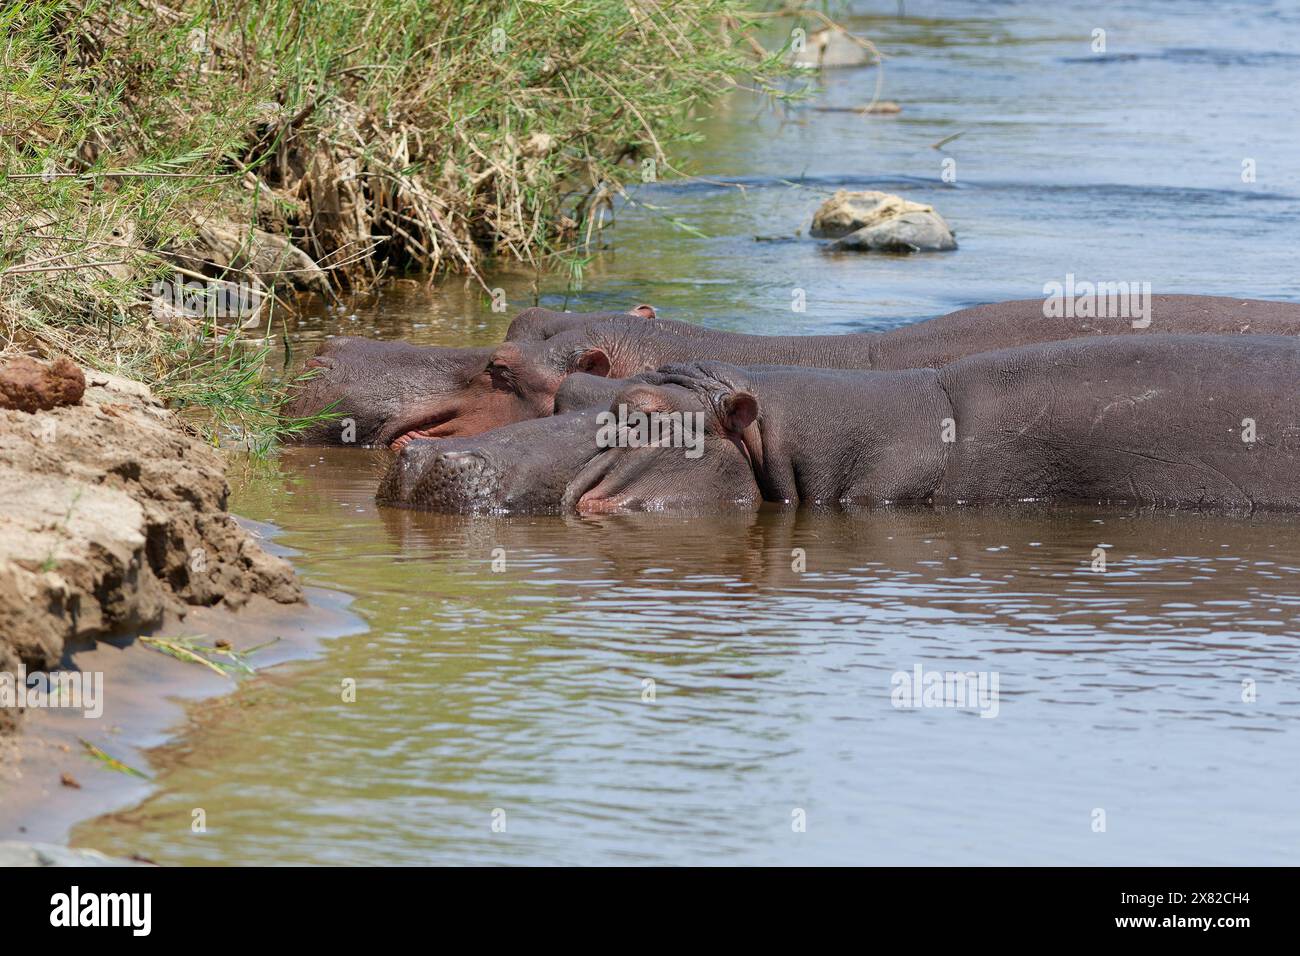 Hippopotames (Hippopotamus amphibius), deux hippopotames adultes dans l'eau, baignant dans la rivière Olifants, parc national Kruger, Afrique du Sud, Afrique Banque D'Images